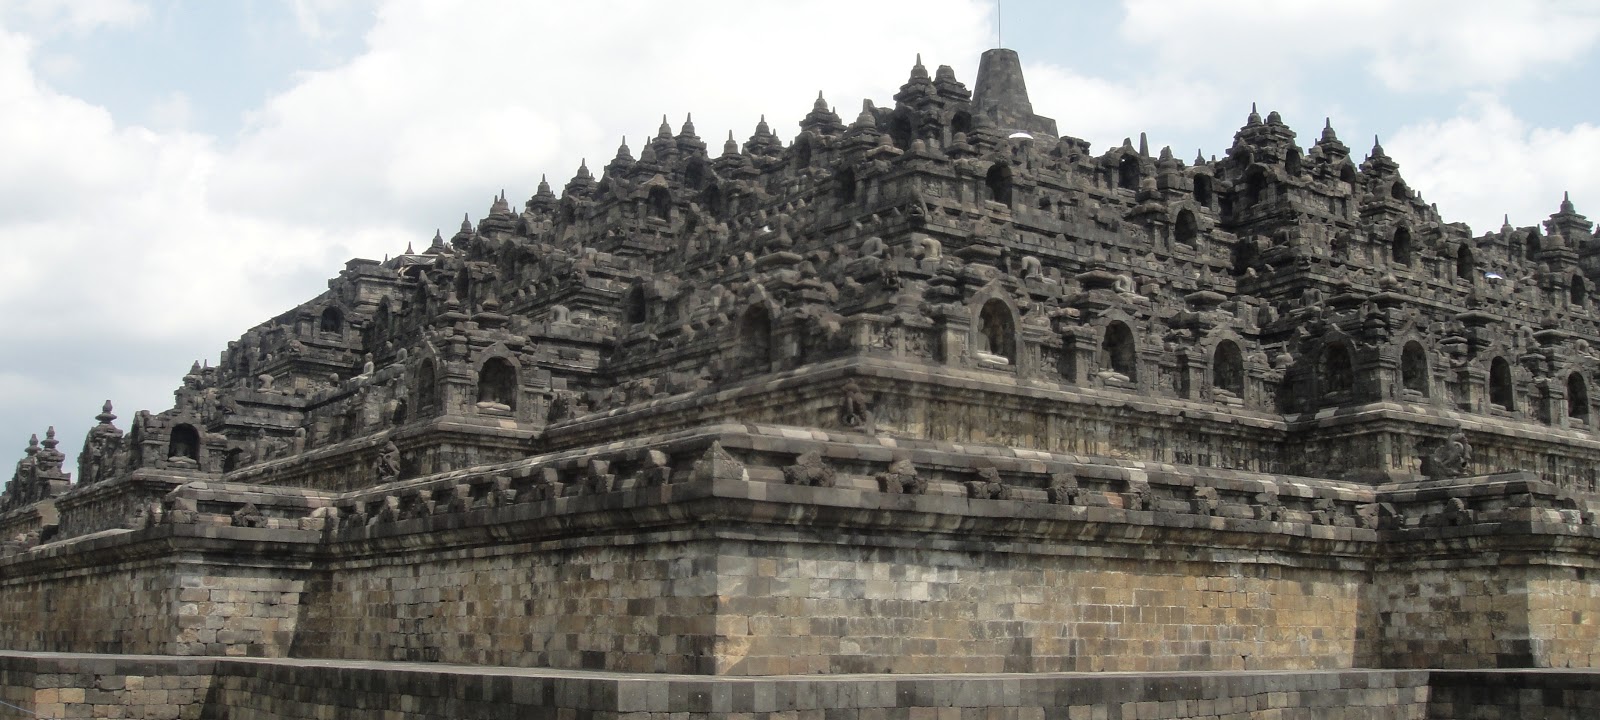 婆罗浮屠由十层巨石砌成金字塔形状